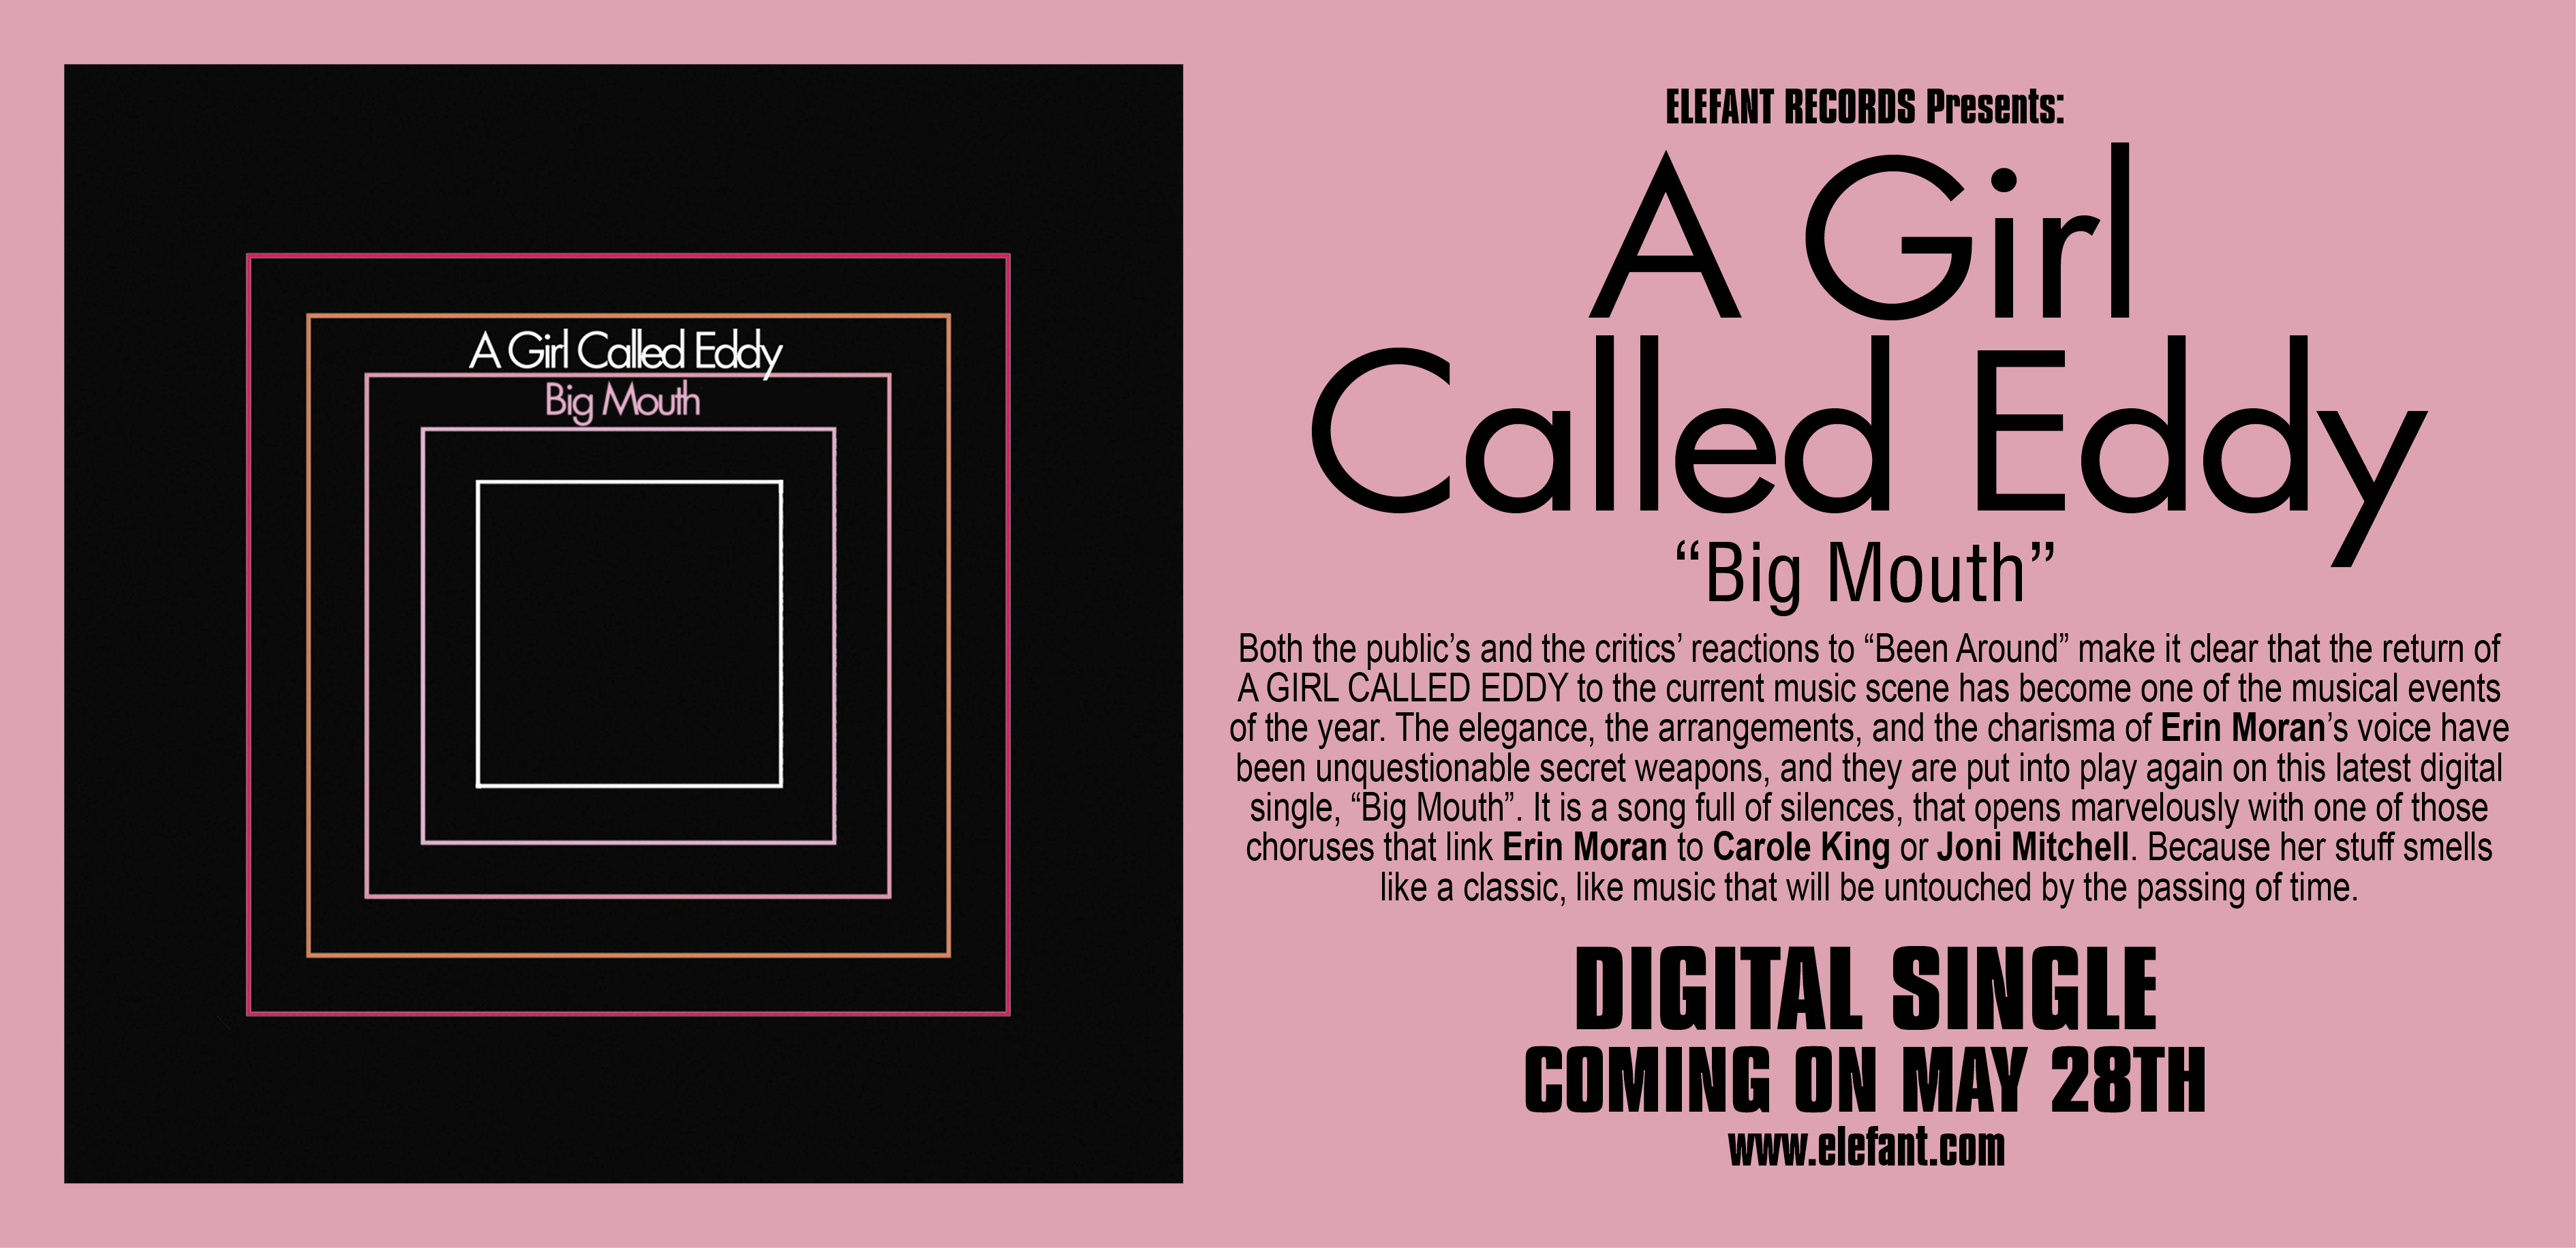 A Girl Called Eddy "Big Mouth" Single Digital